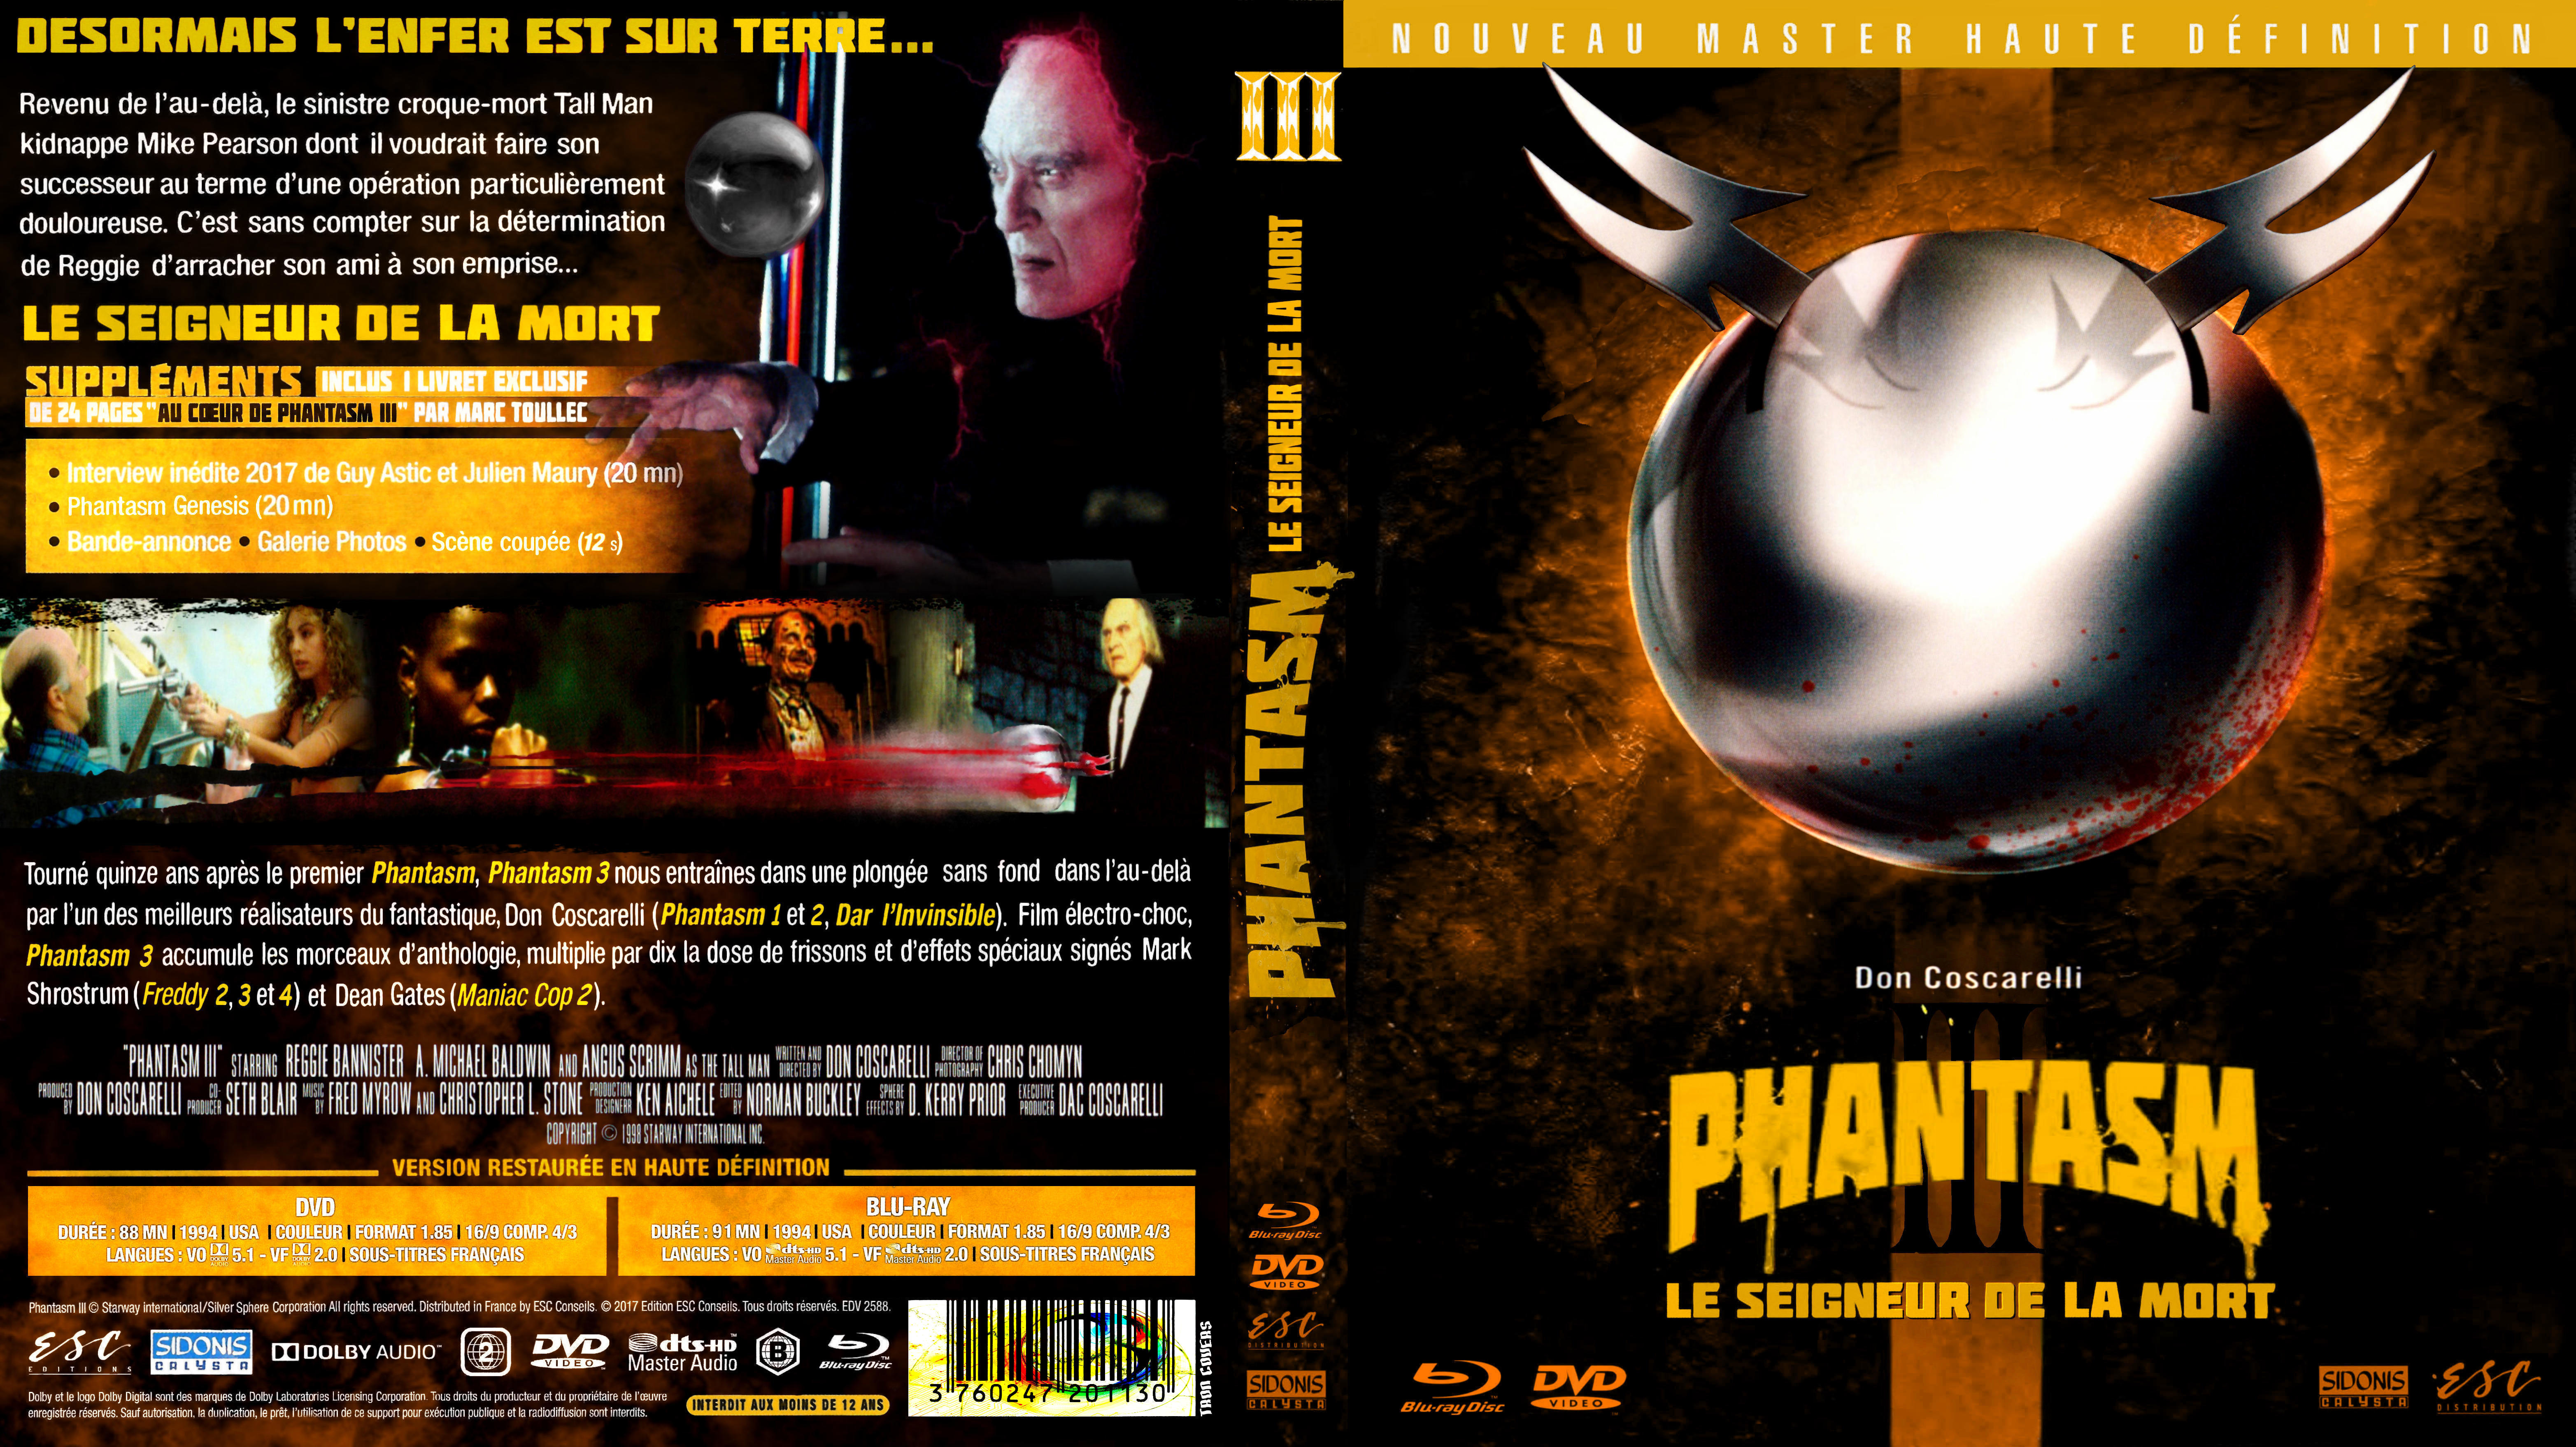 Jaquette DVD Phantasm 3 custom (BLU-RAY)